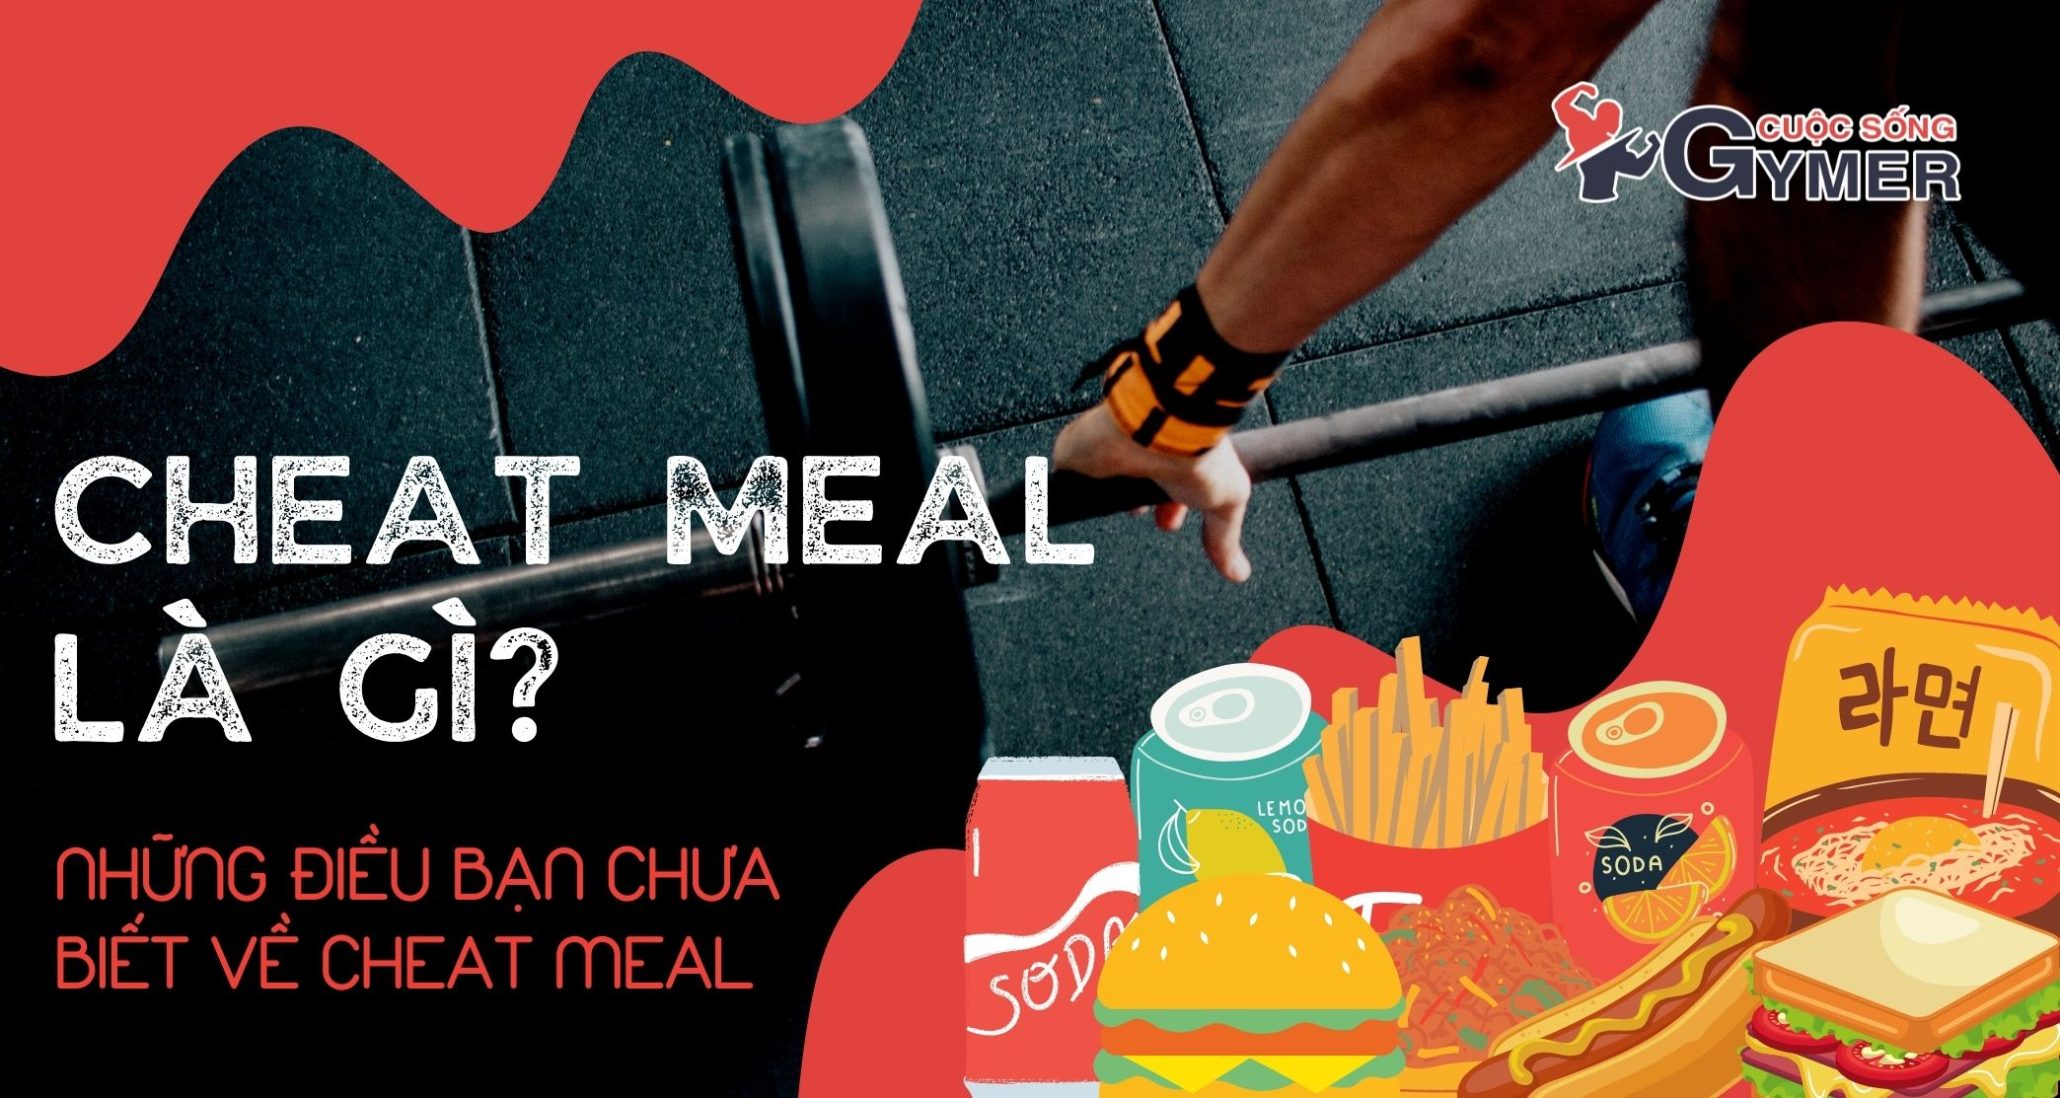 Cheat Meal là gì? Những điều bạn chưa biết về Cheat Meal